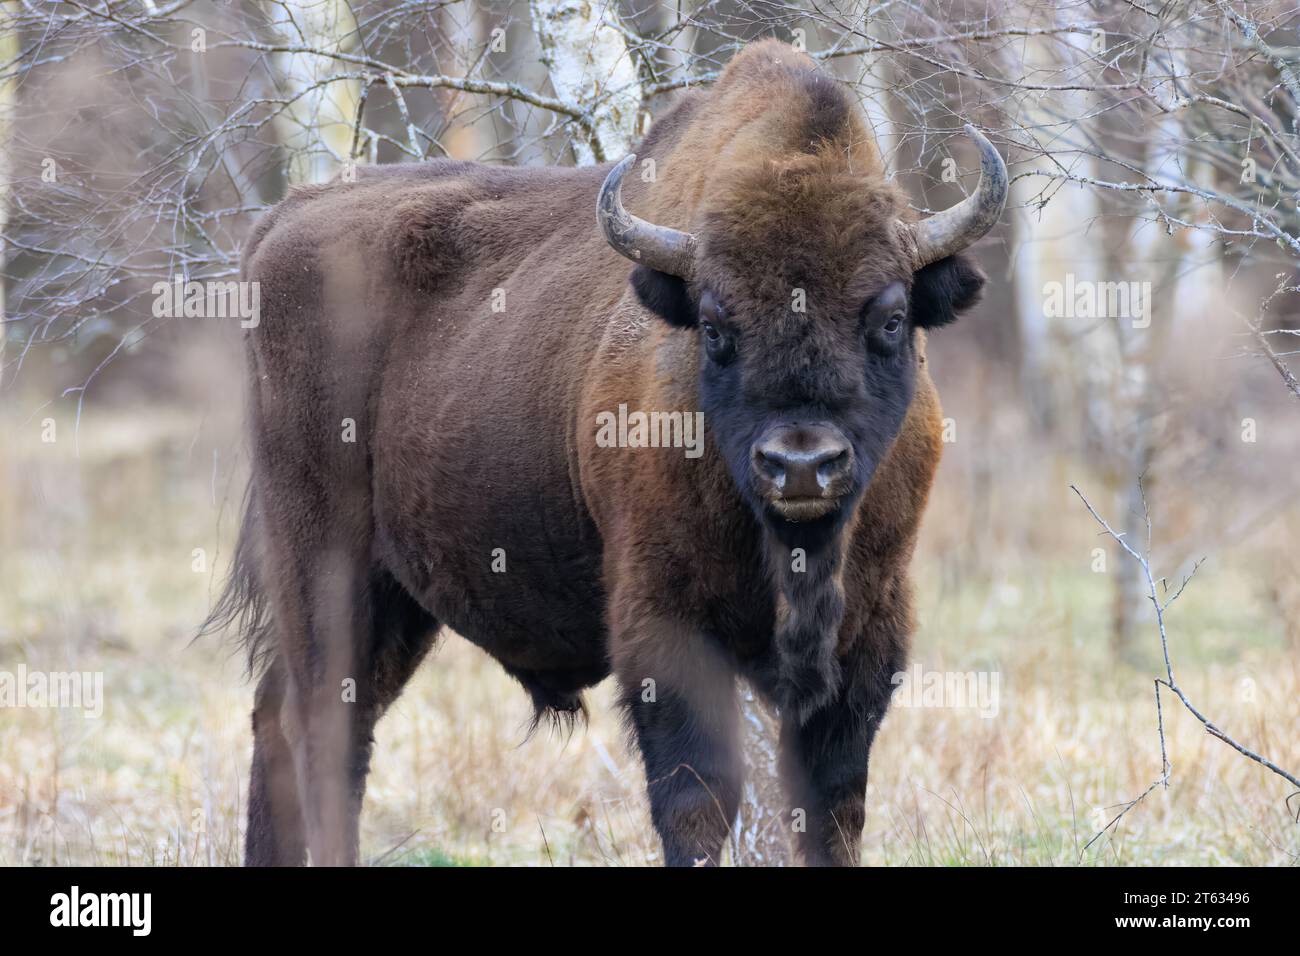 Bison européenne (Bison bonasus) mâle dans la forêt de printemps regardant caméra, forêt de Bialowieza, Pologne, Europe Banque D'Images